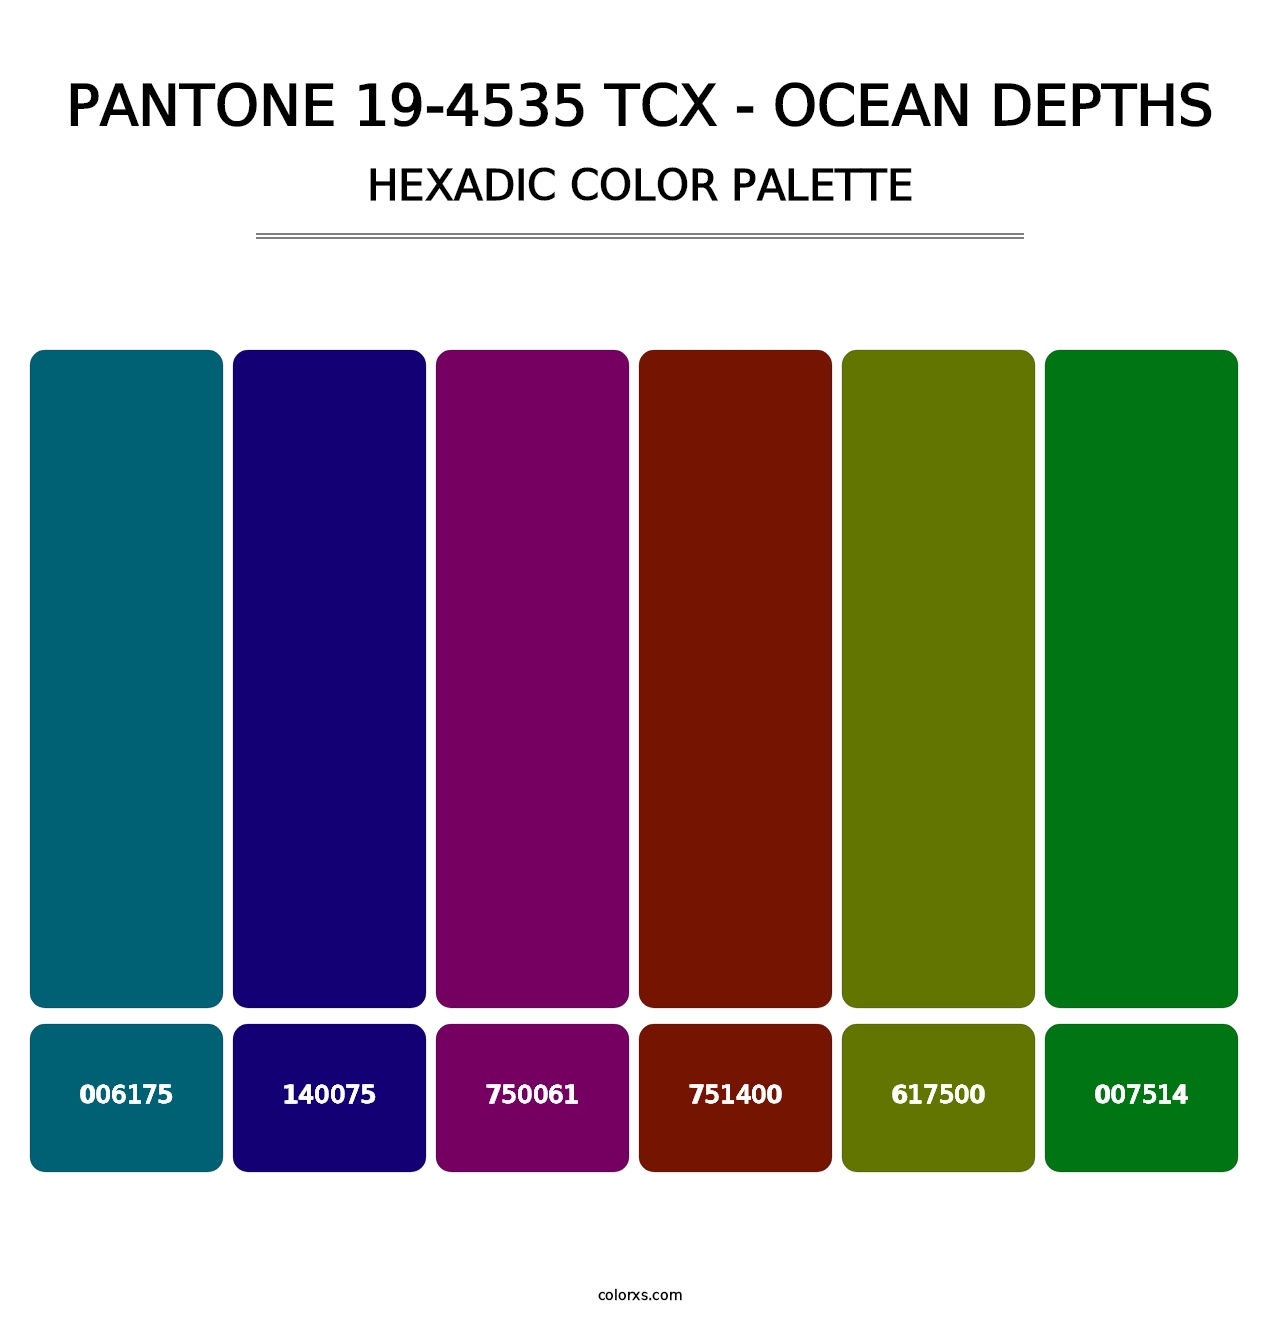 PANTONE 19-4535 TCX - Ocean Depths - Hexadic Color Palette